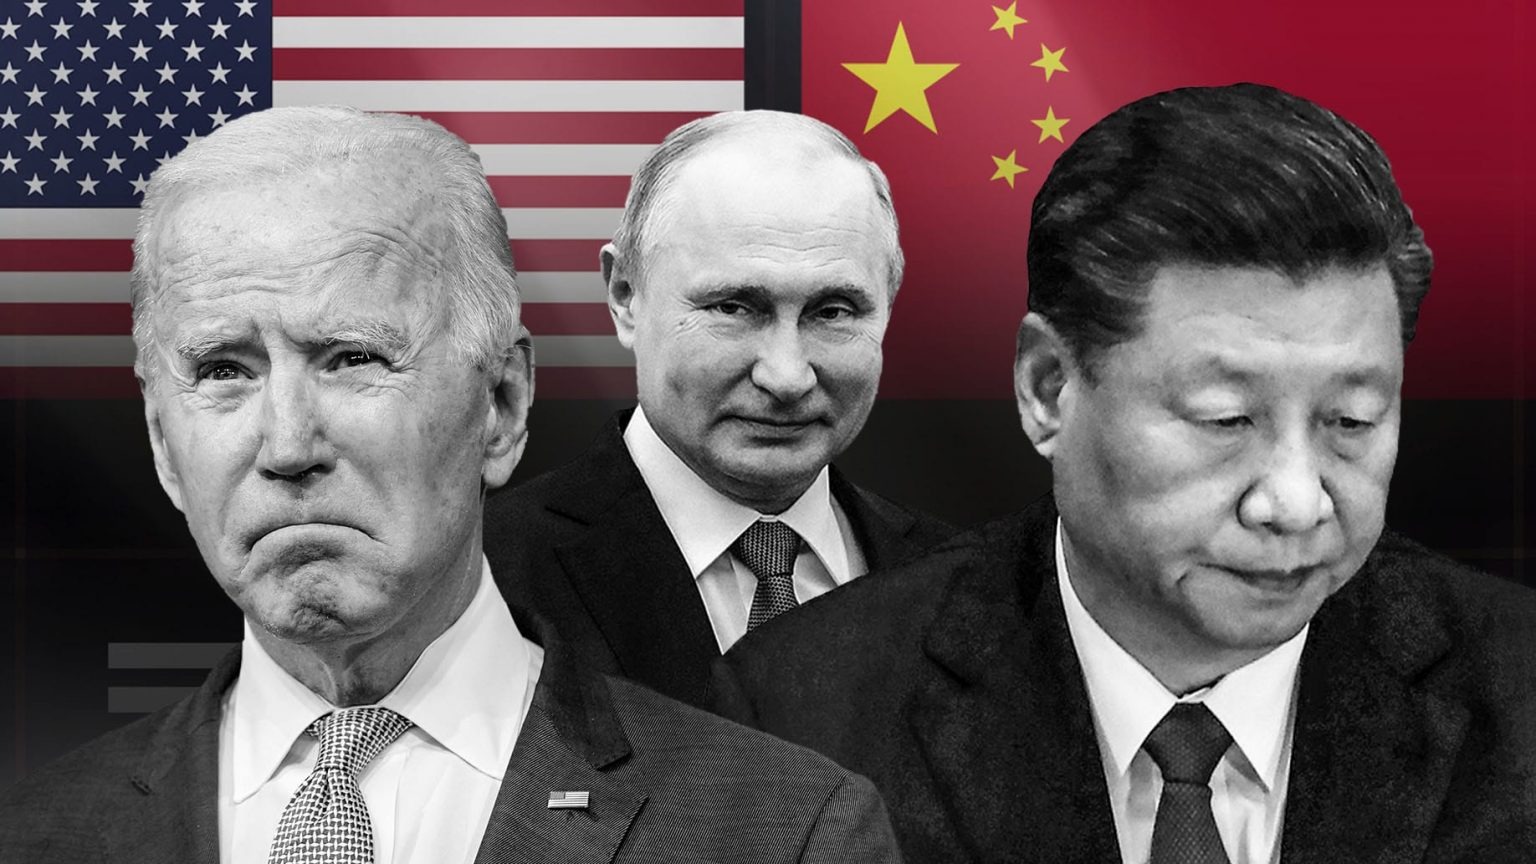 As guerras dos EUA contra a Rússia e a China não possuem nenhuma lógica econômica atrelada a elas